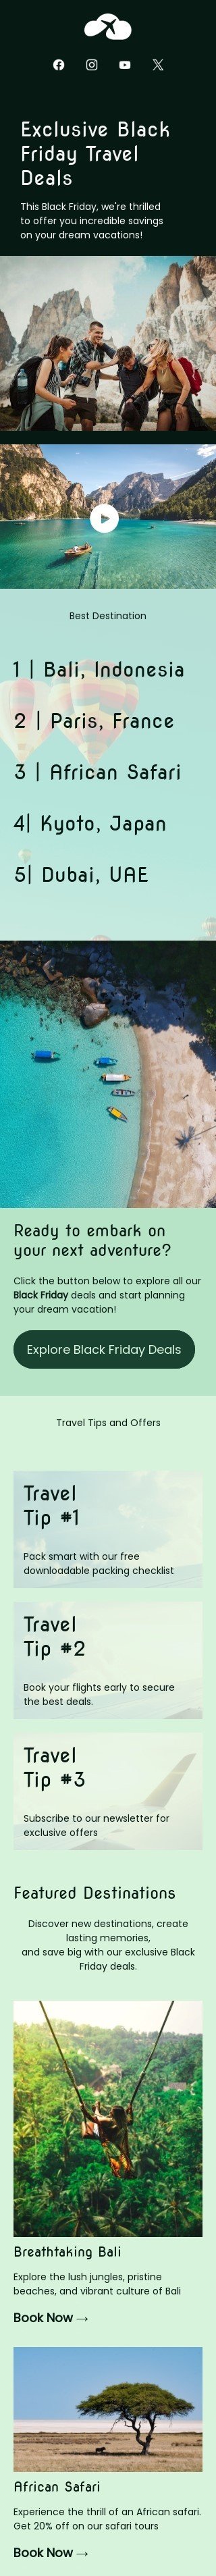 Black Friday E-Mail-Vorlage «Reiseangebote für den Black Friday» für Tourismus-Branche Ansicht auf Mobilgeräten